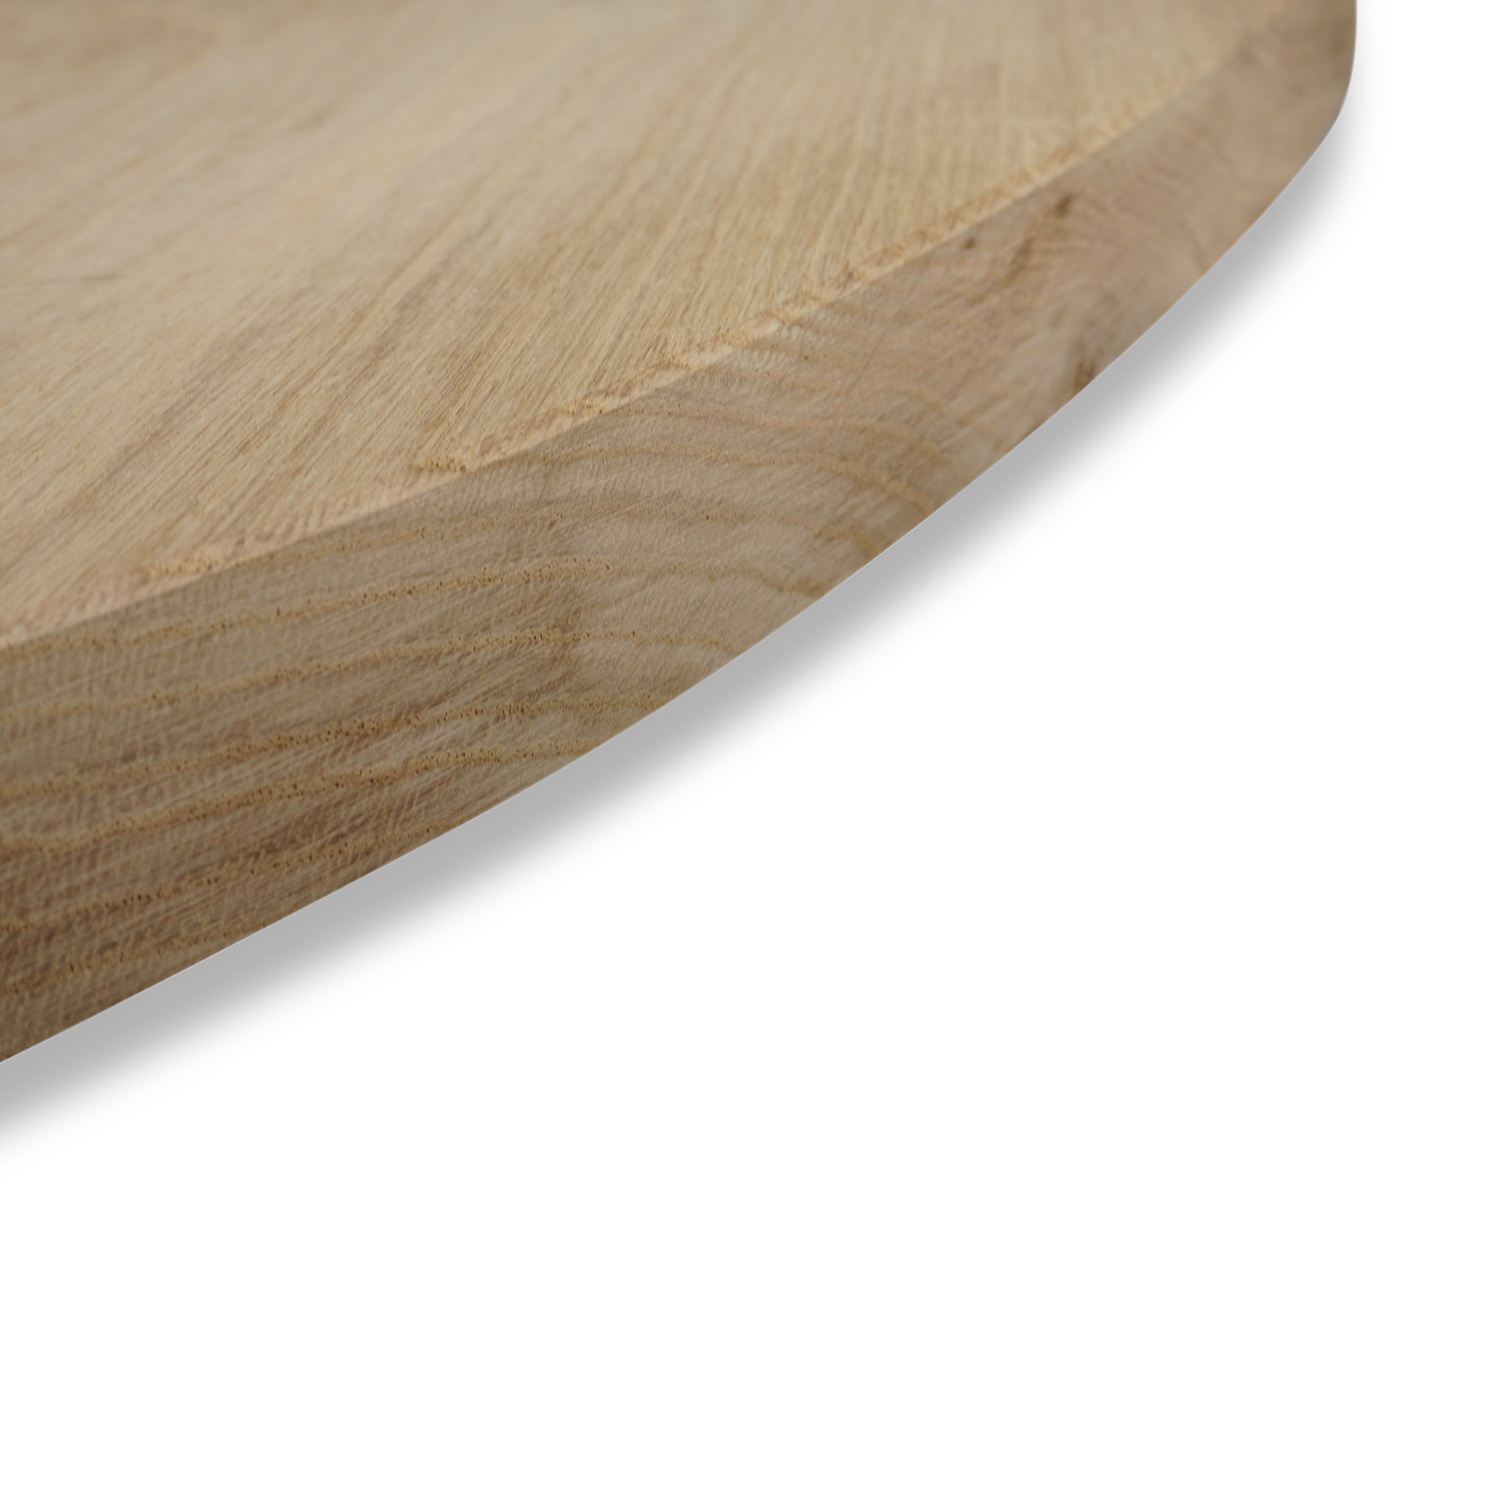  Tischplatte Eiche oval - 2,5 cm dick - Eichenholz A-Qualität - Ellipse Eiche Tischplatte massiv - HF 8-12%